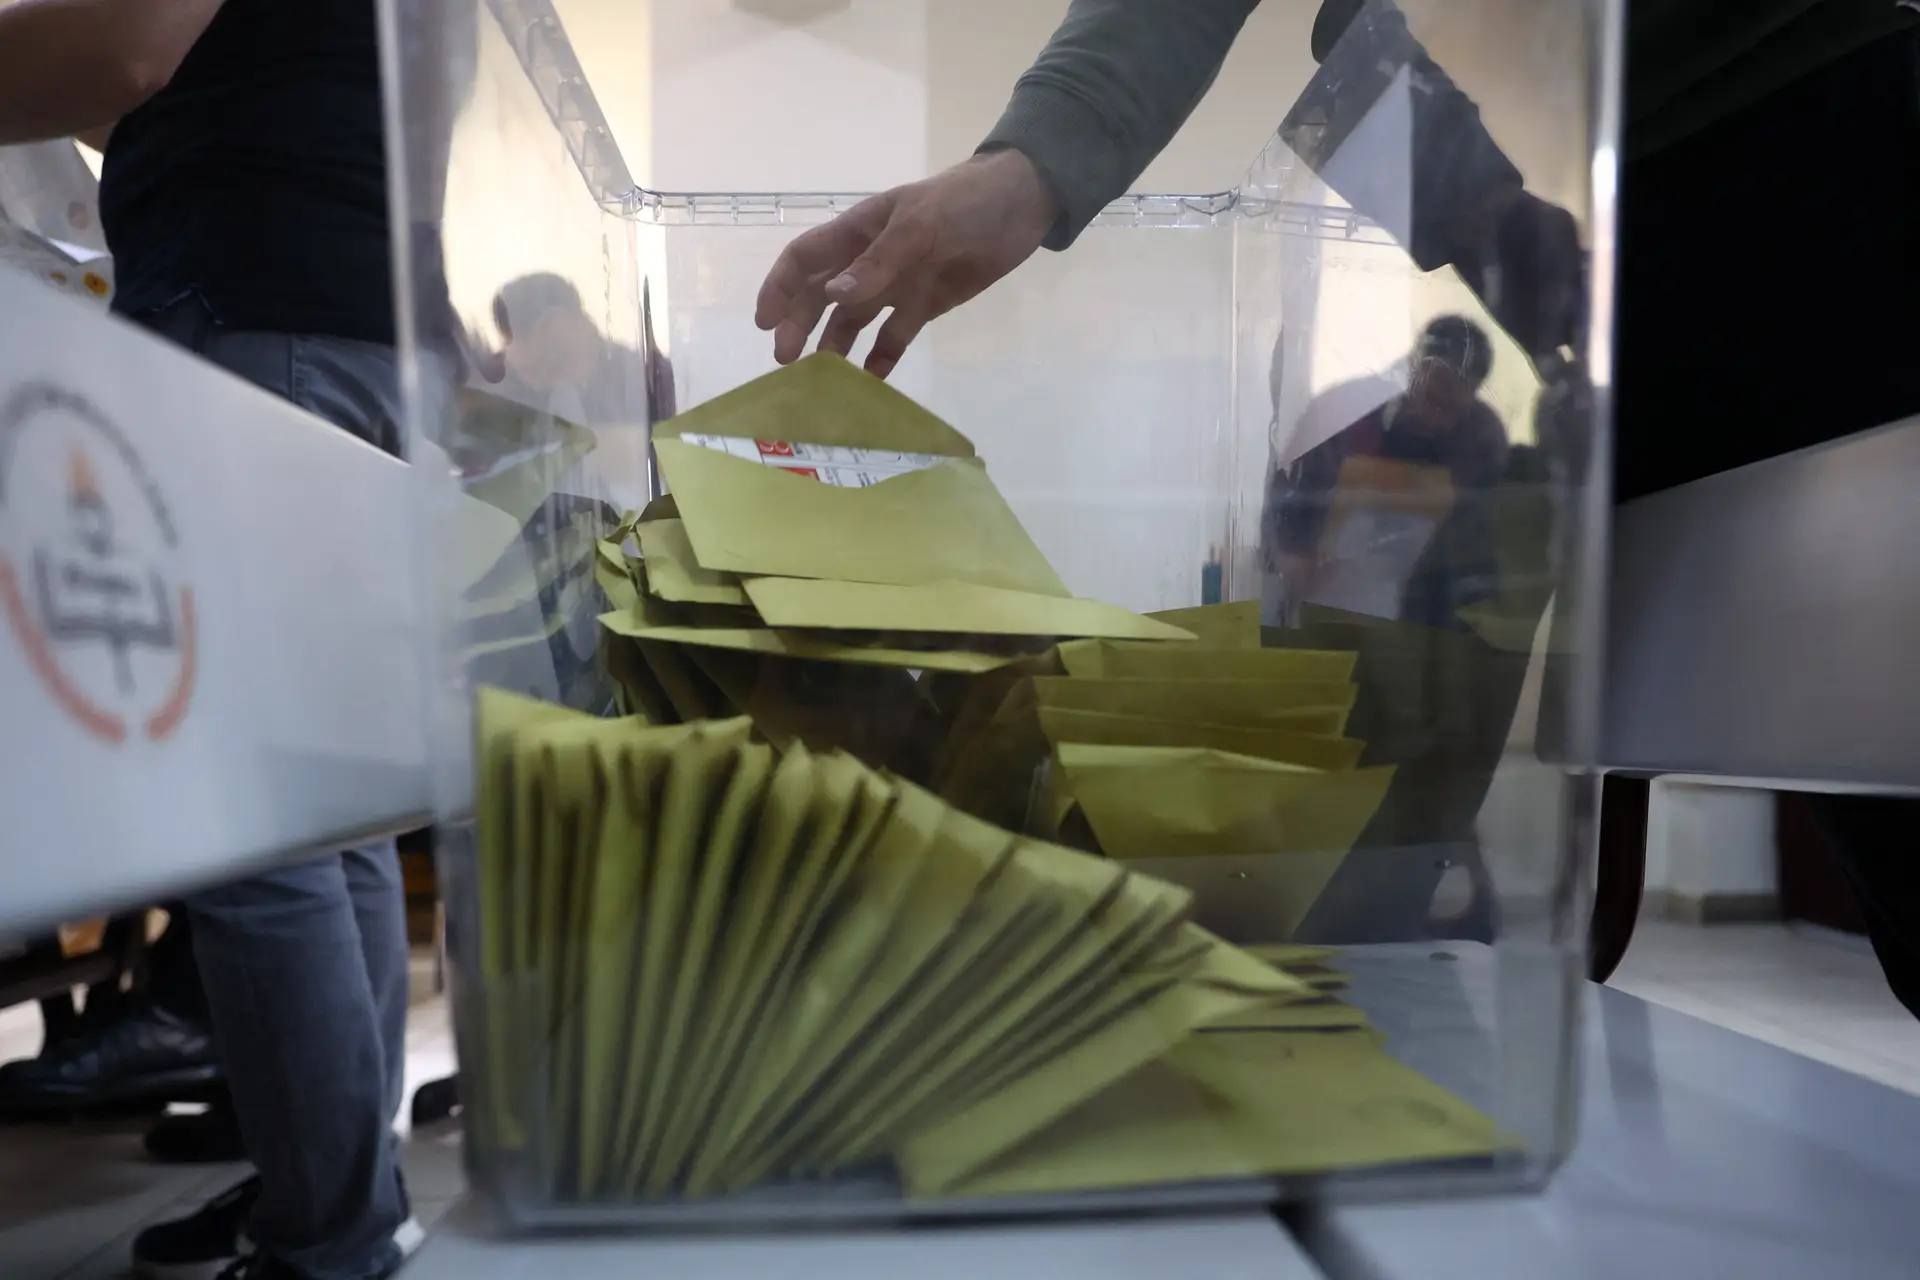 Portugueses vão às urnas hoje para definir novo Parlamento